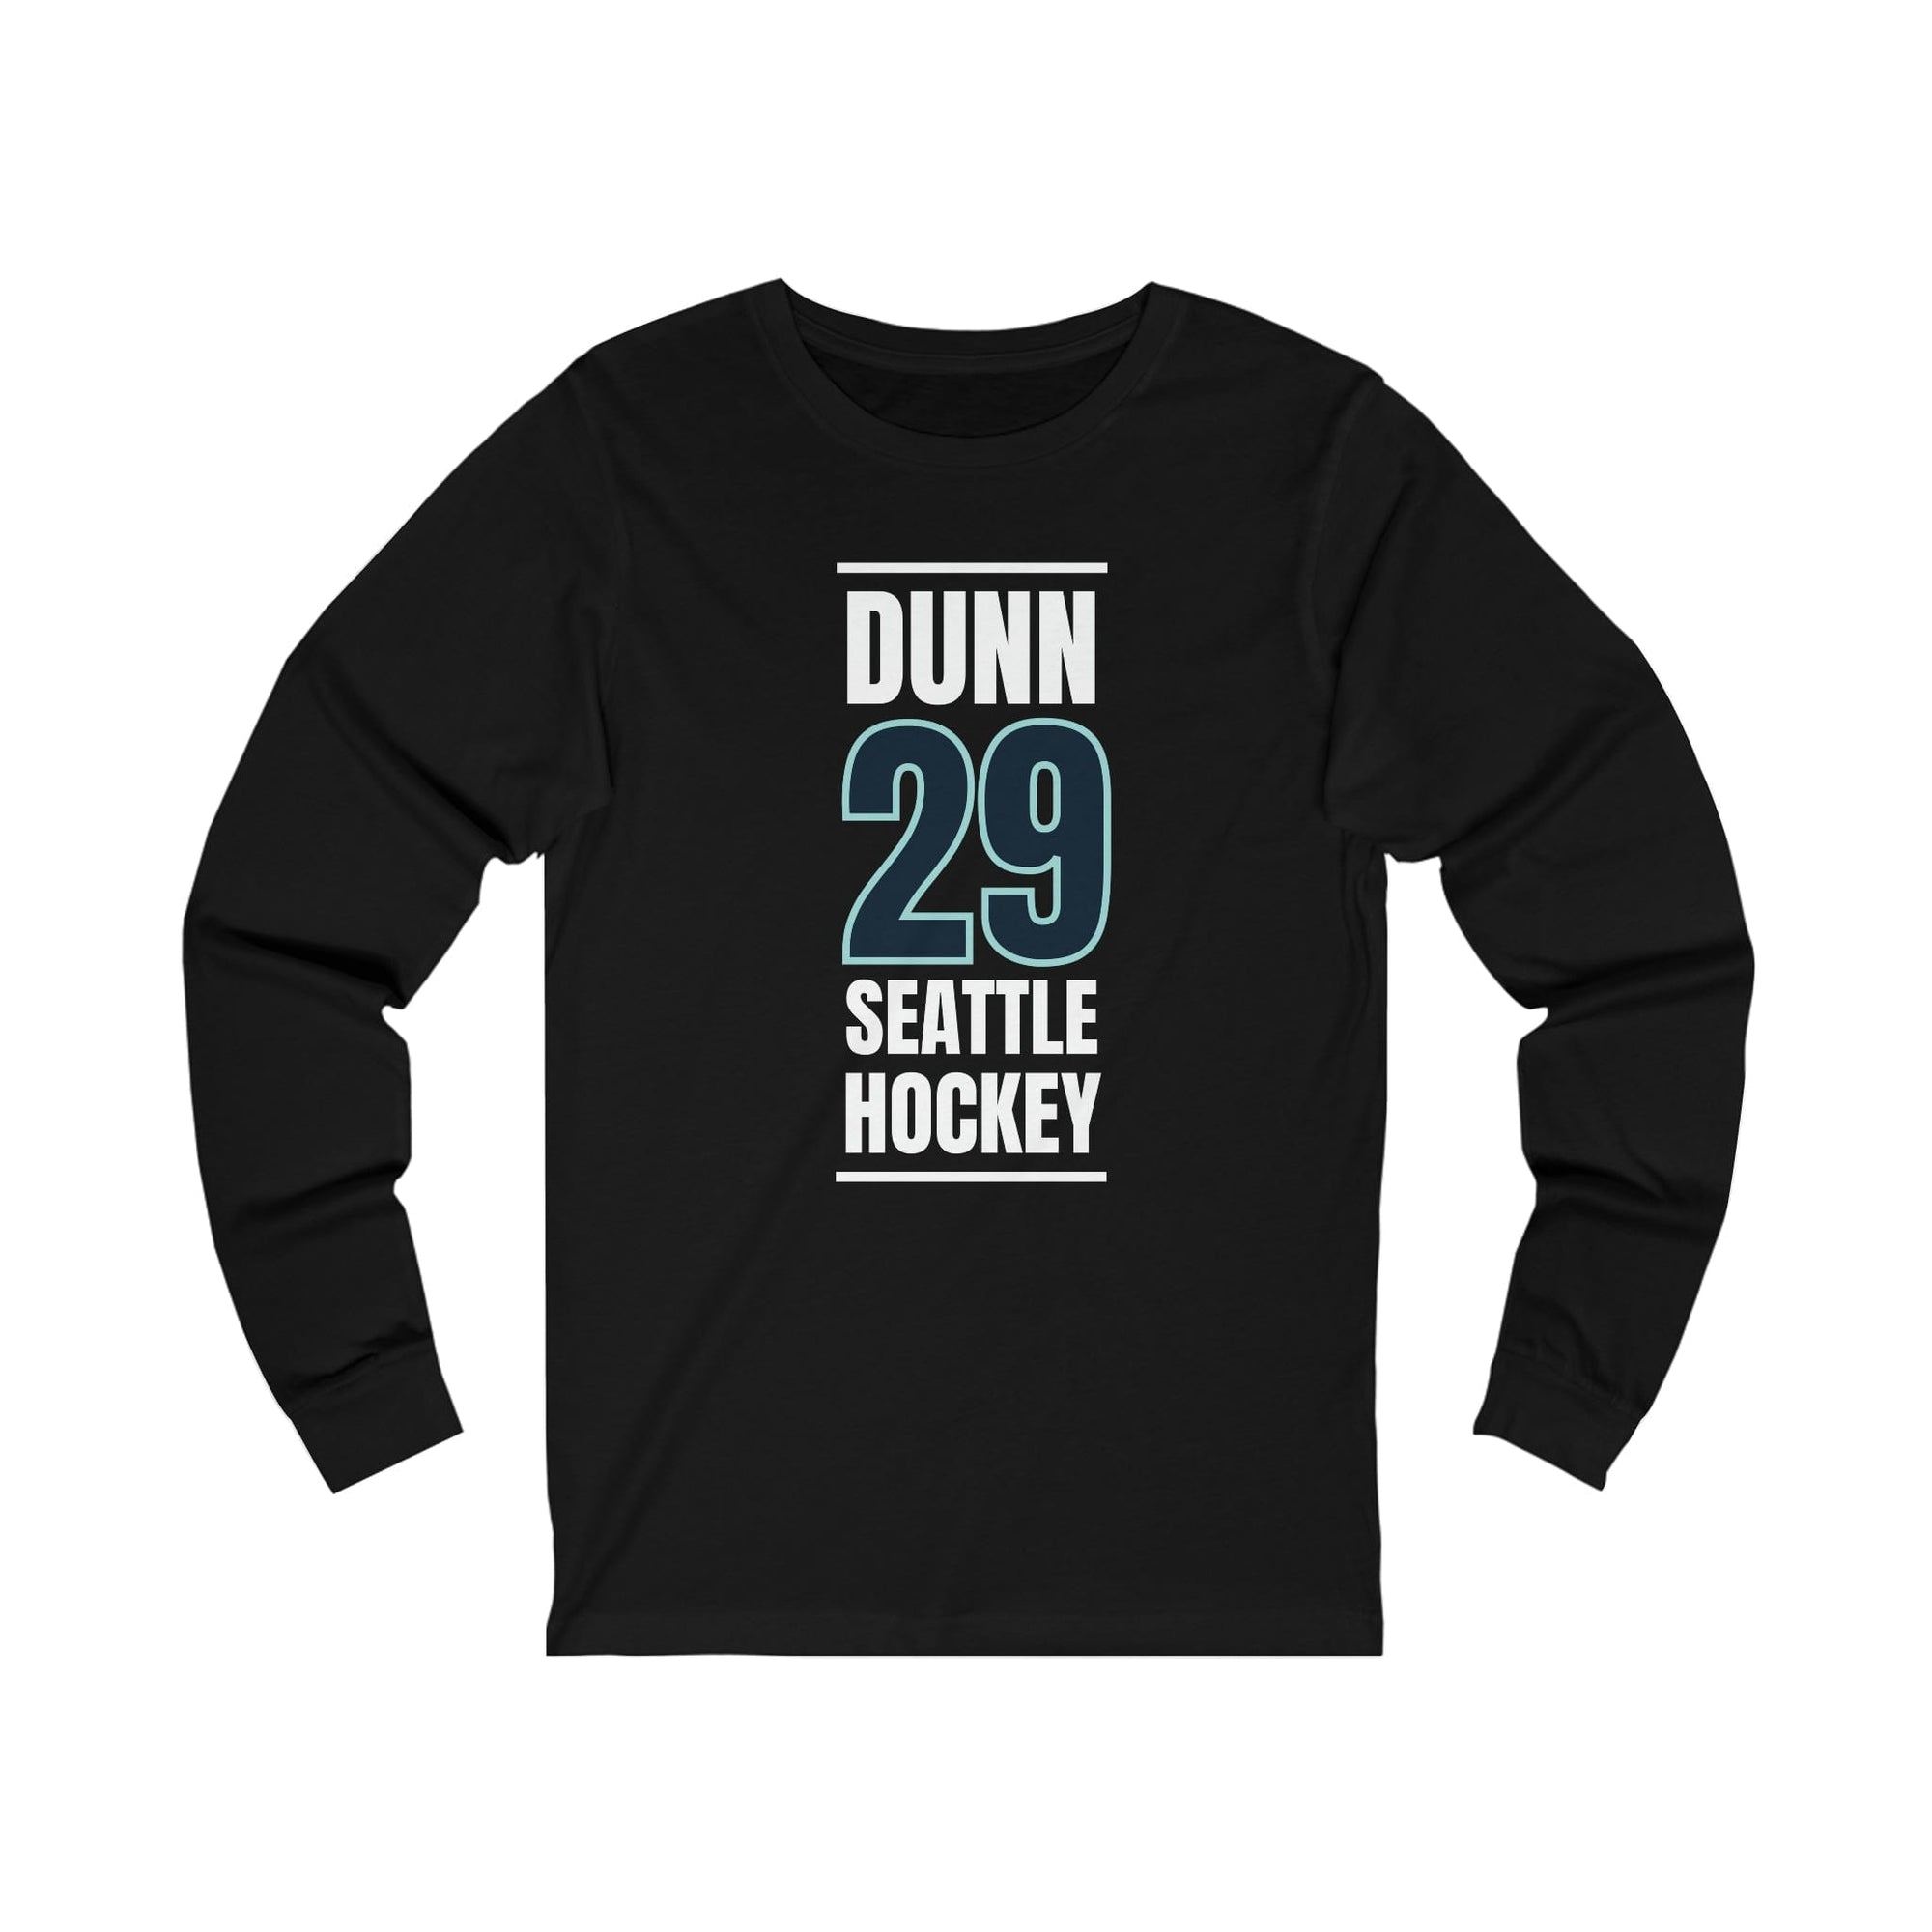 Long-sleeve Dunn 29 Seattle Hockey Black Vertical Design Unisex Jersey Long Sleeve Shirt